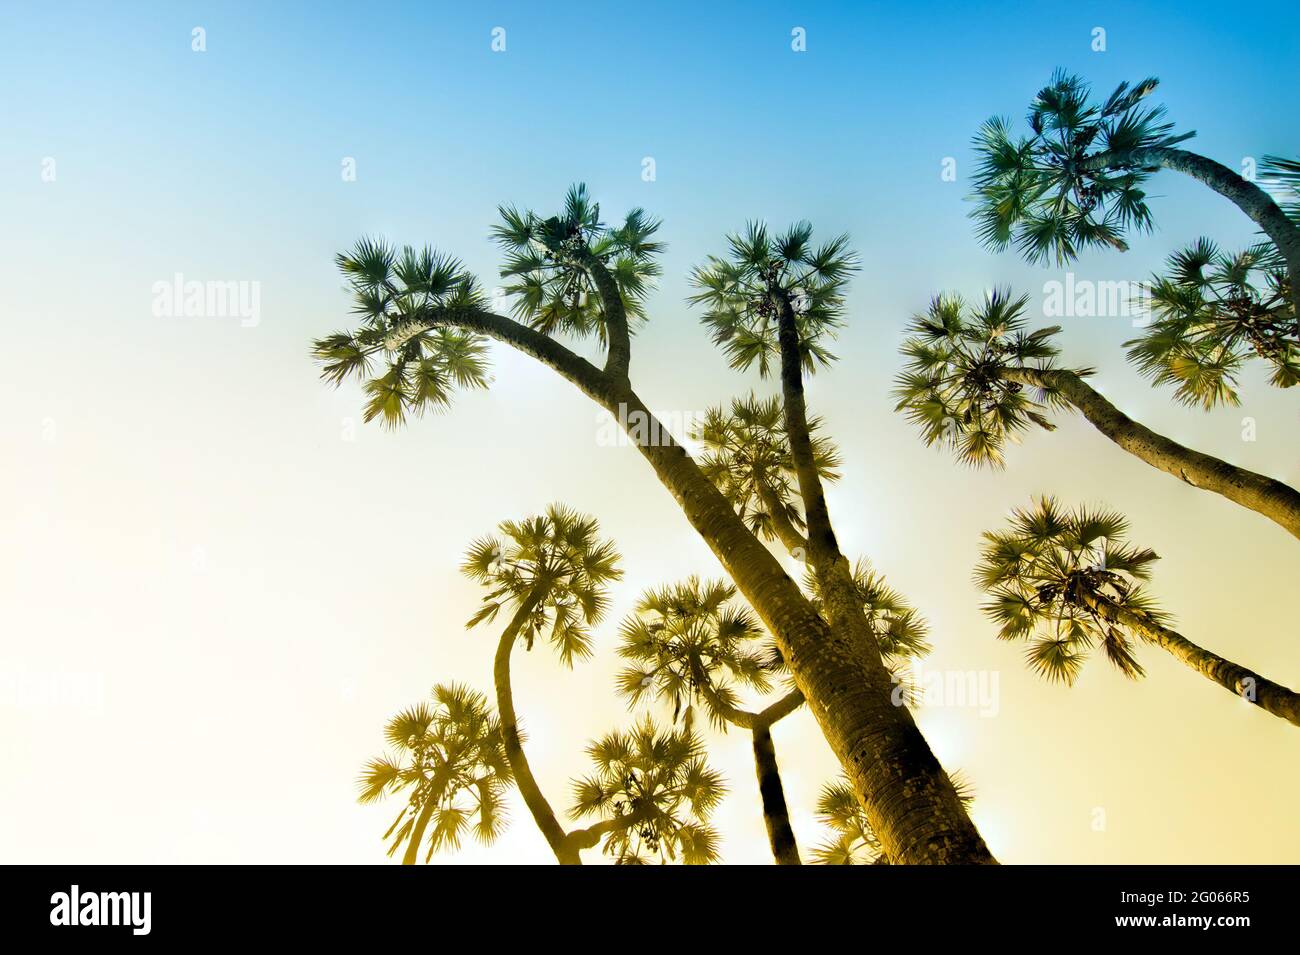 Mettere a fuoco l'immagine impilata di palme , in alto fino al cielo blu sullo sfondo. Splendida immagine della riserva naturale, vista panoramica naturale indiana. Foto Stock